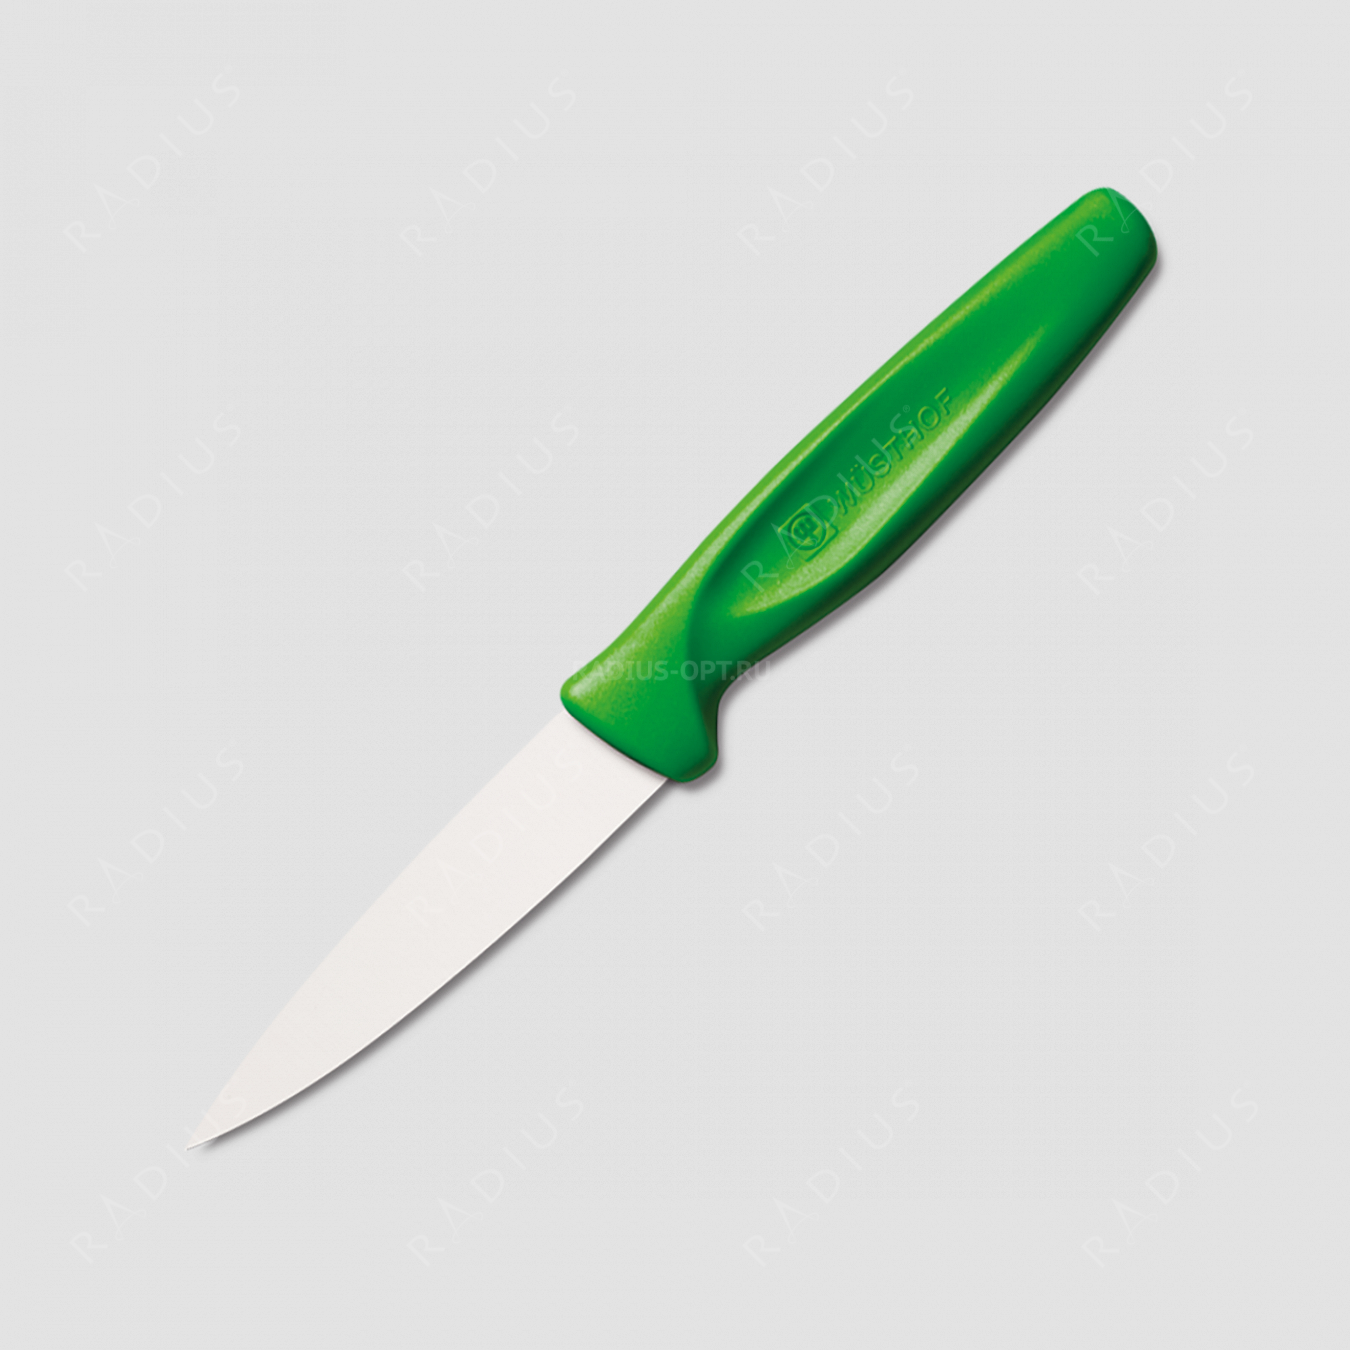 Нож кухонный для чистки овощей 8 см, рукоять зеленая, серия Sharp Fresh Colourful, WUESTHOF, Золинген, Германия